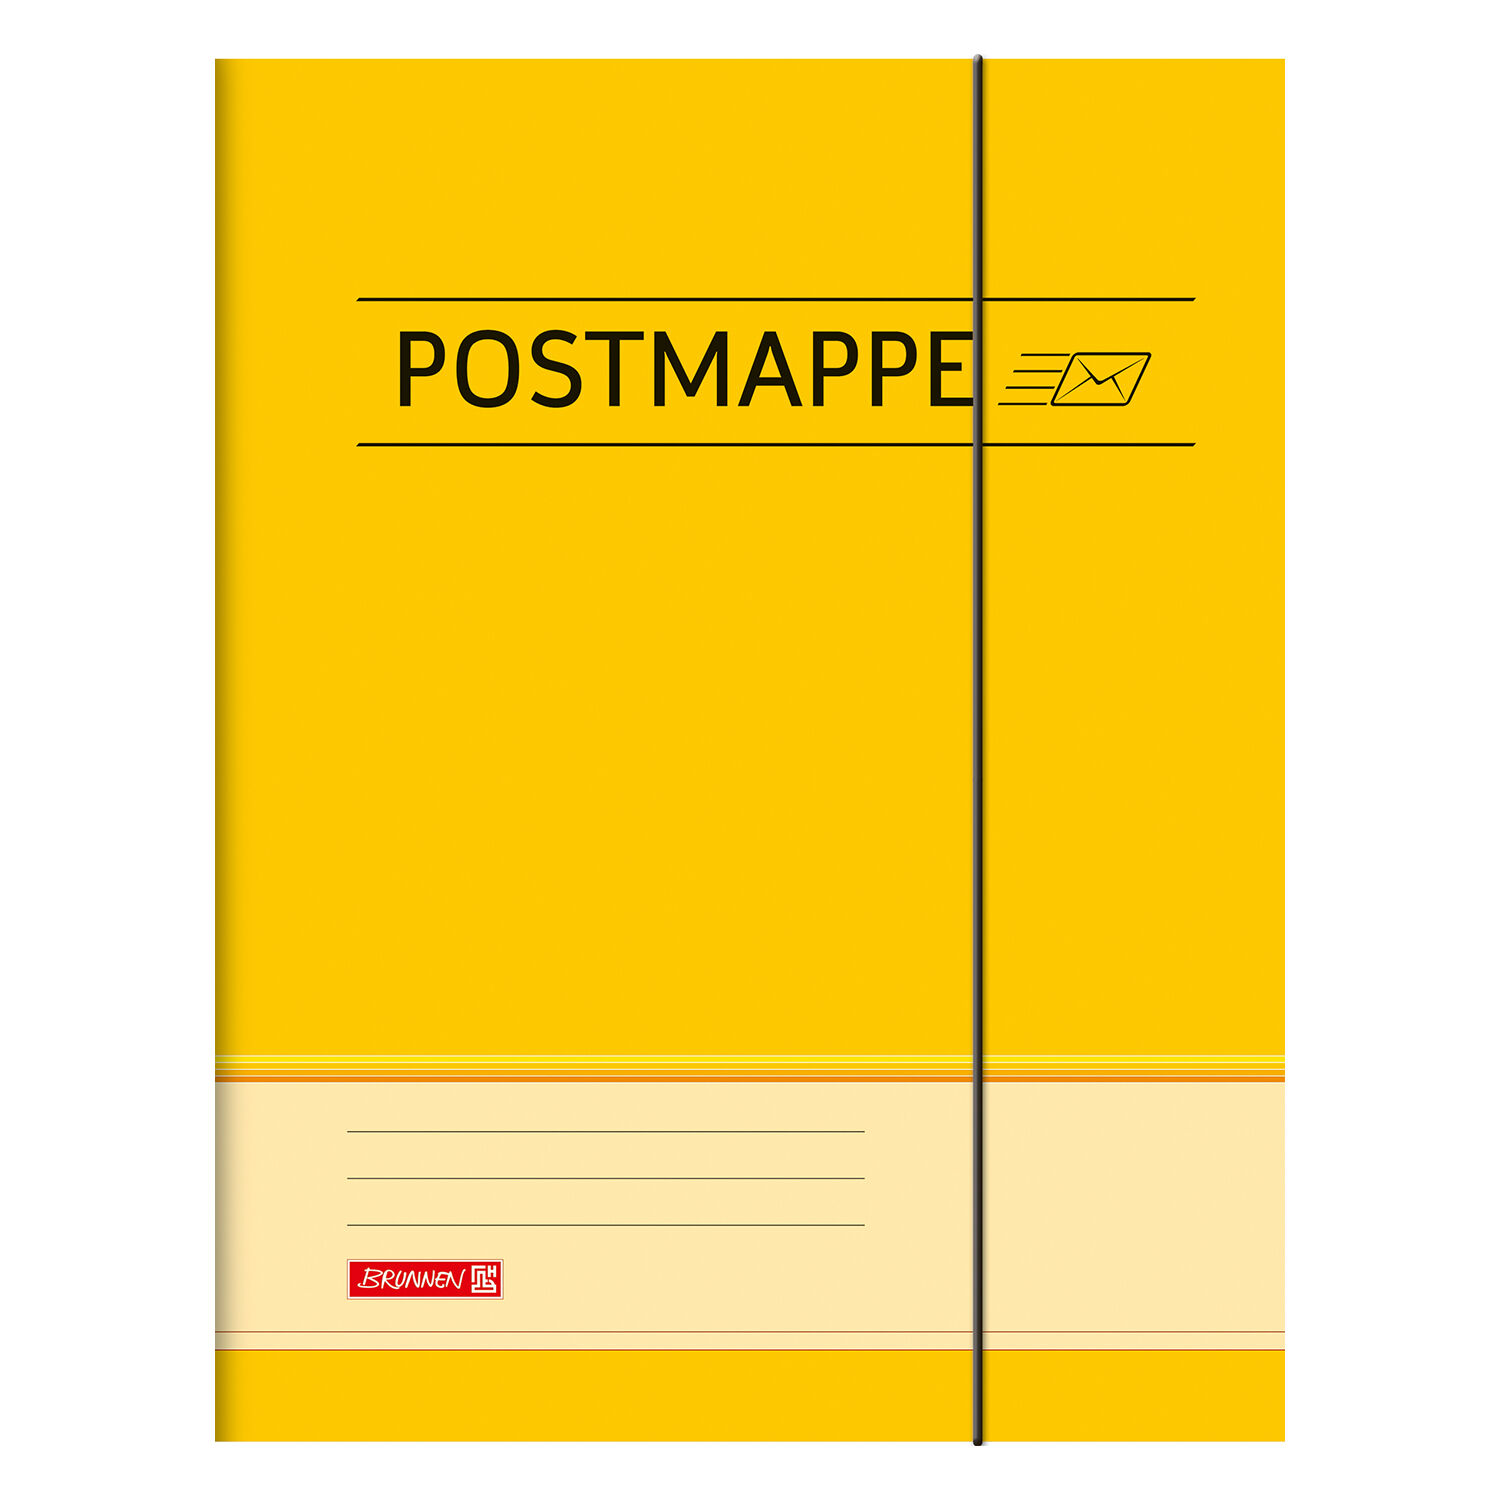 NEU Postmappe aus Karton, DIN A4, mit Gummizug